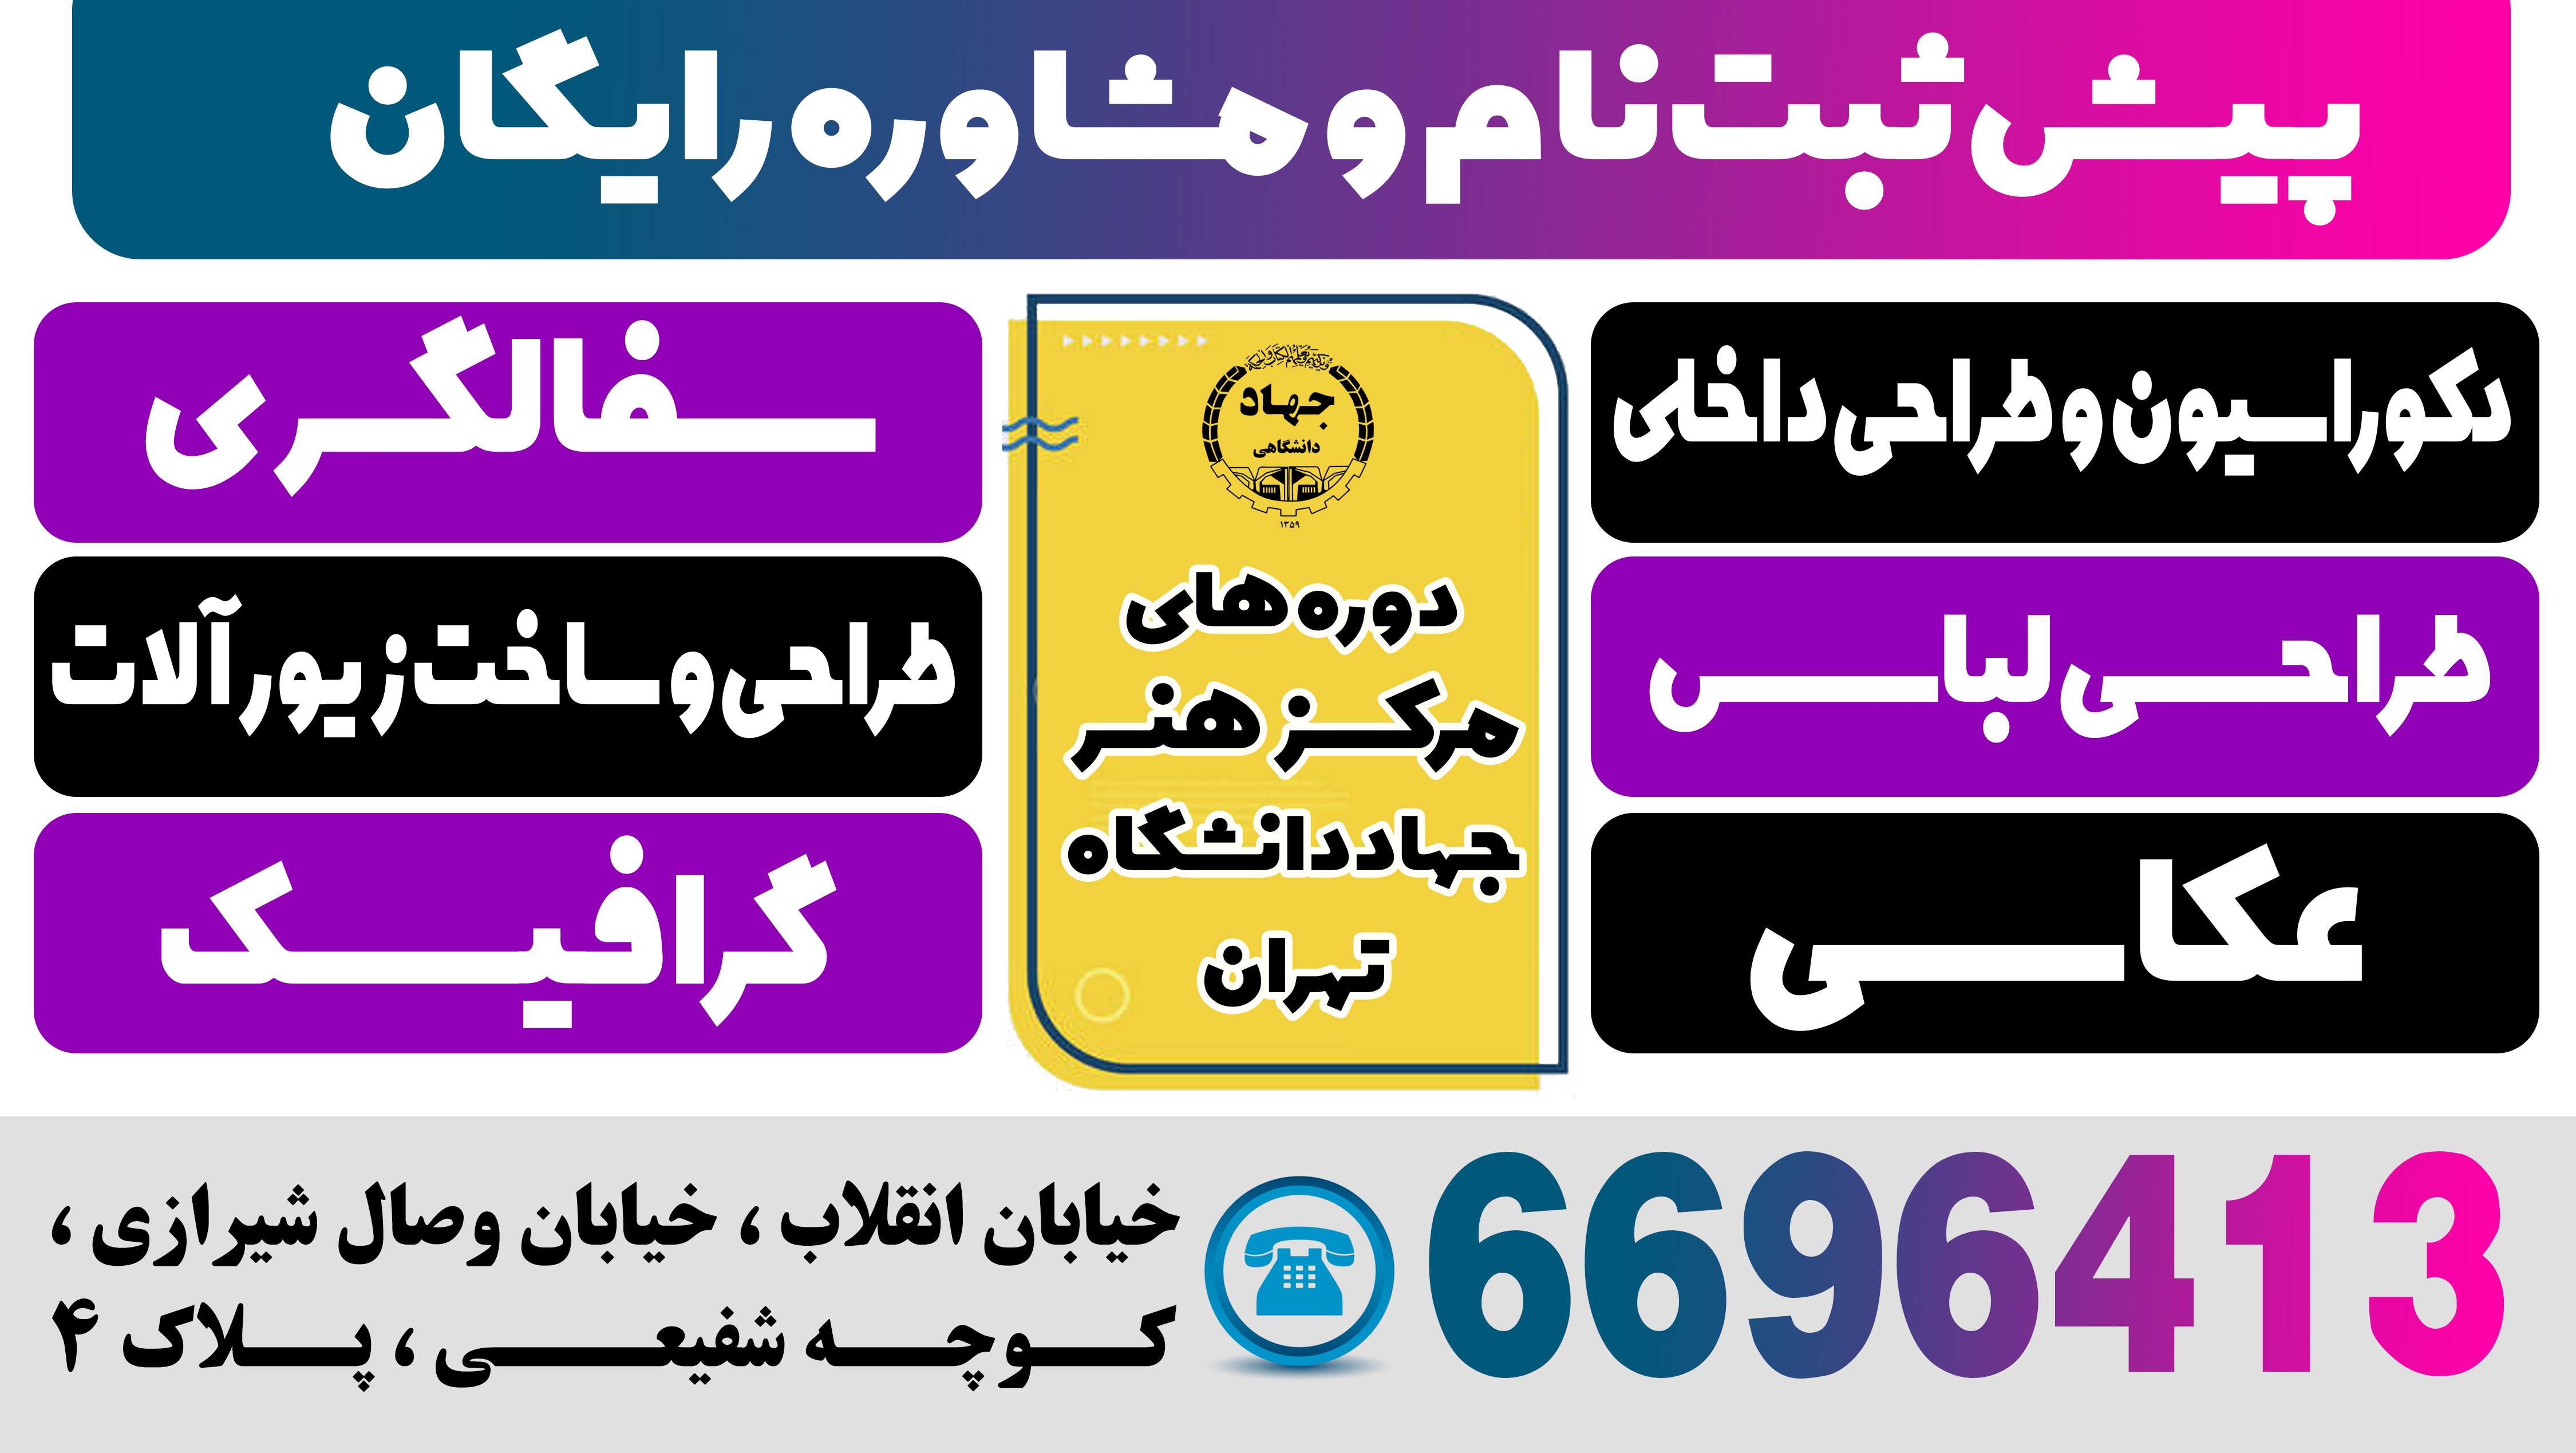 ثبت نام ترم تابستان 1402 مرکز هنر سازمان جهاد دانشگاهی تهران آغاز شد.